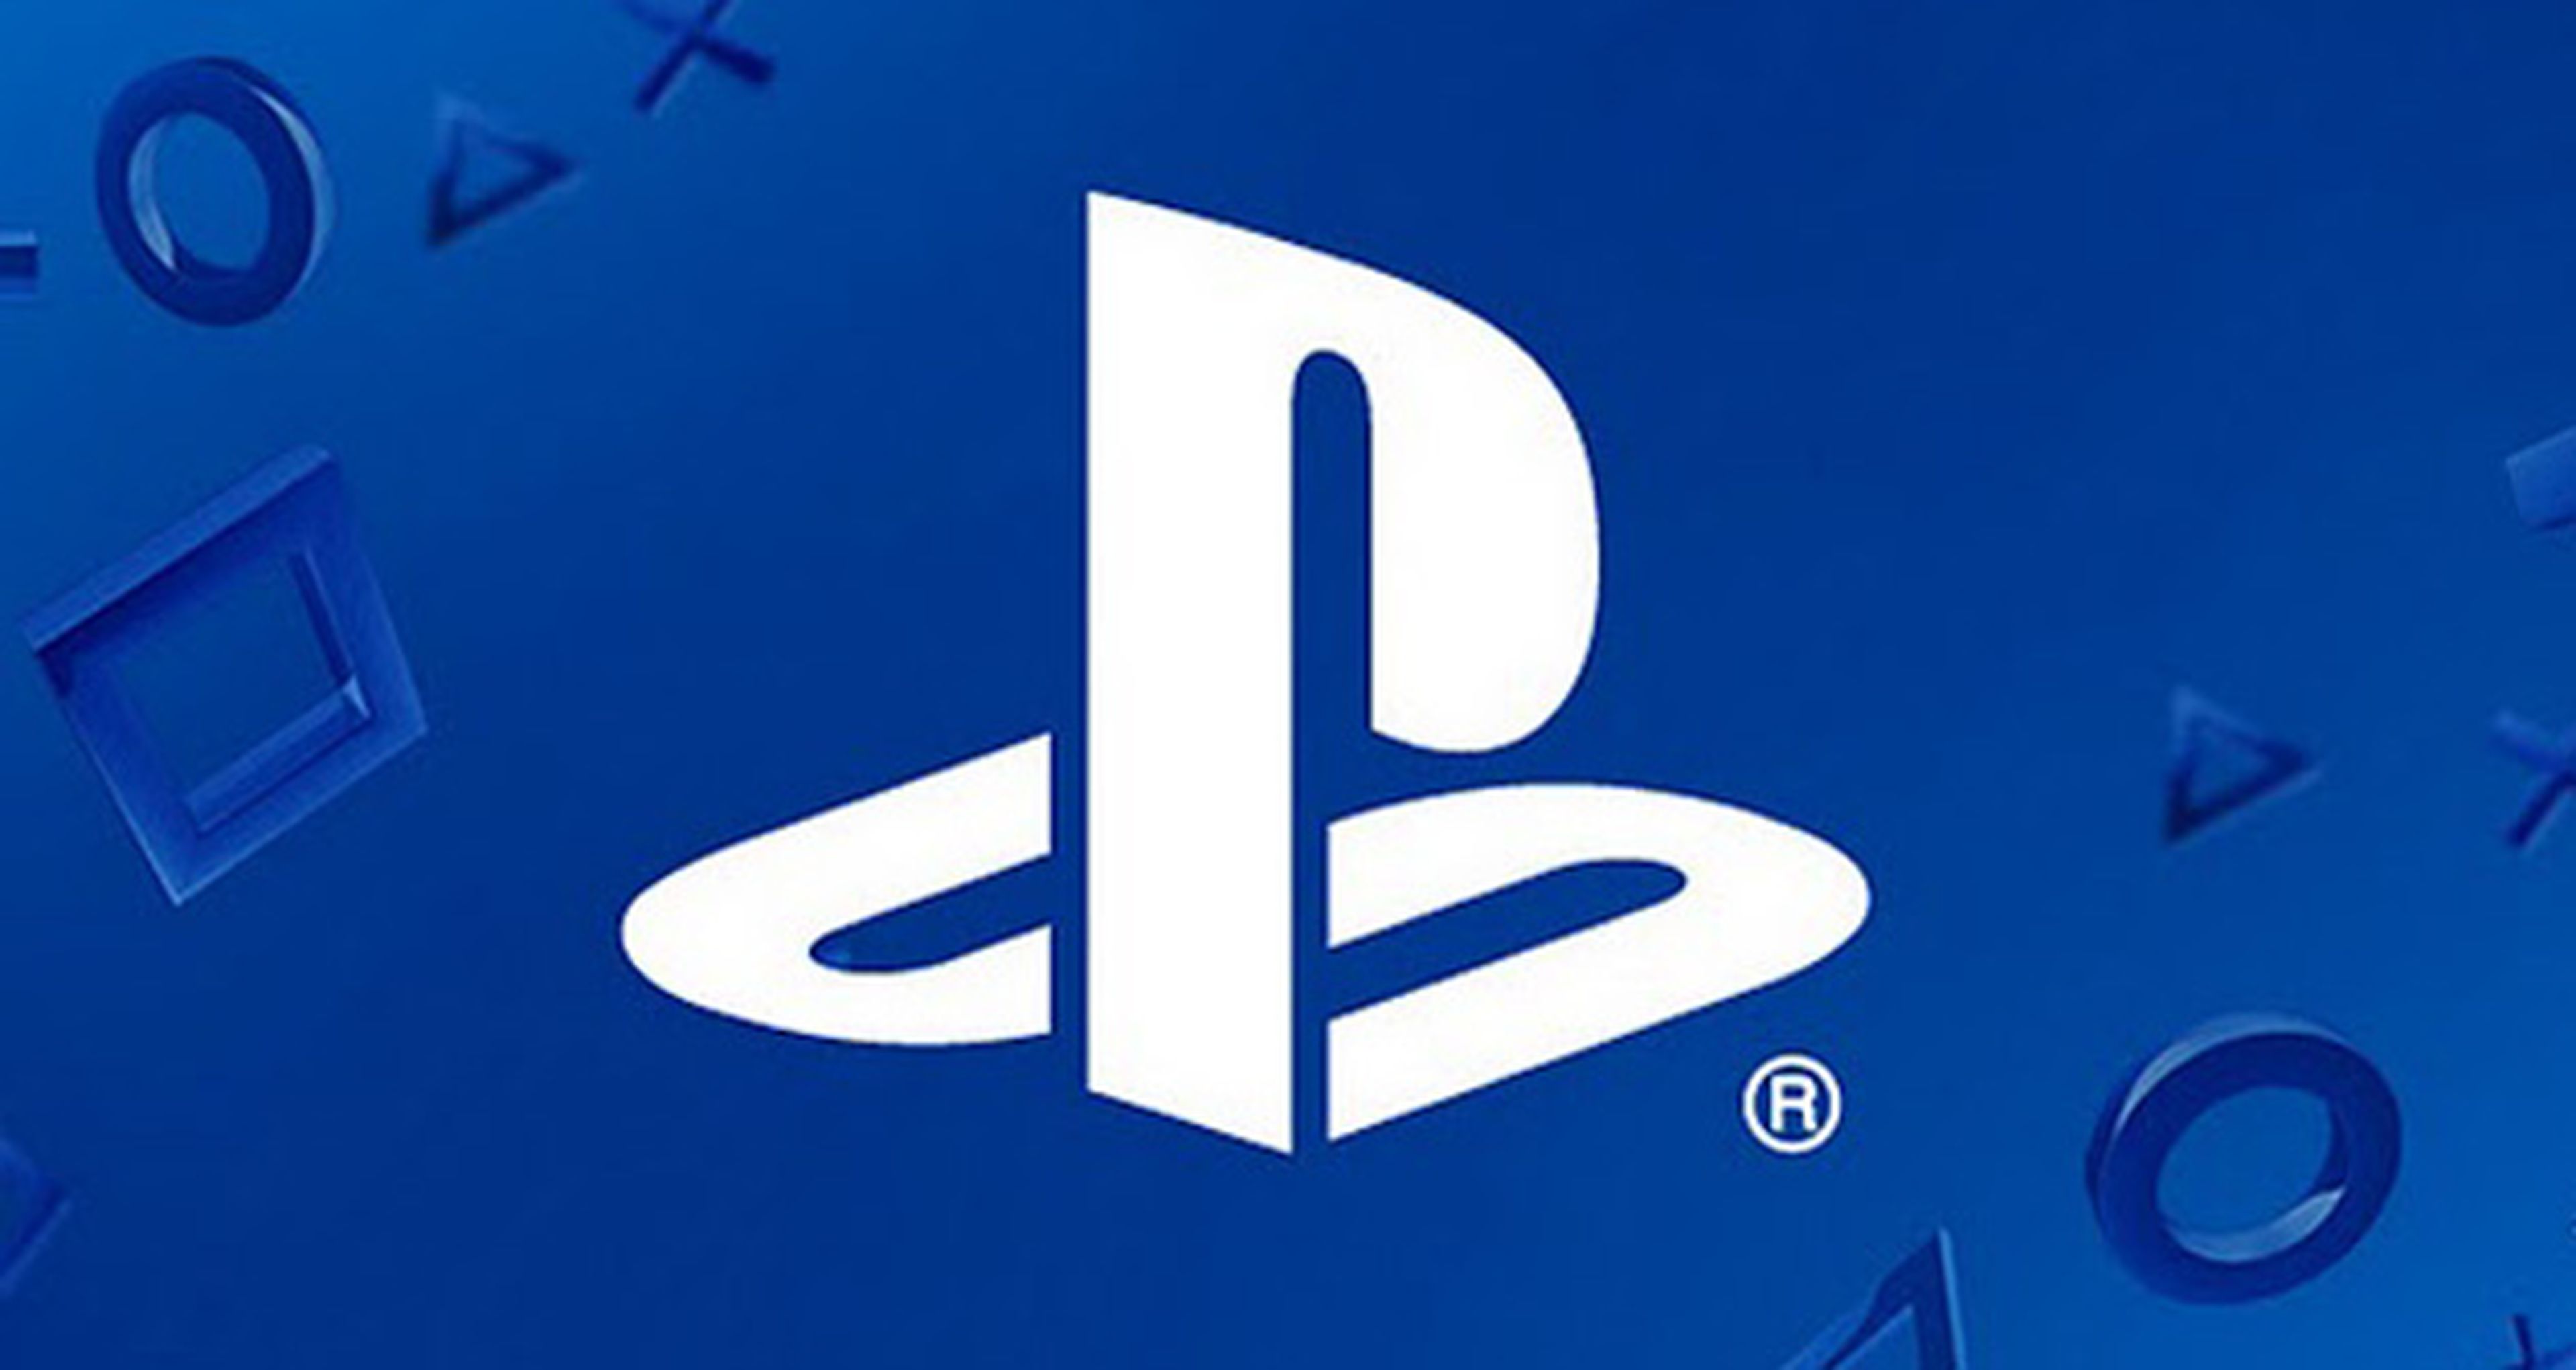 Se confirman los estudios y los juegos presentes en PlayStation Experience